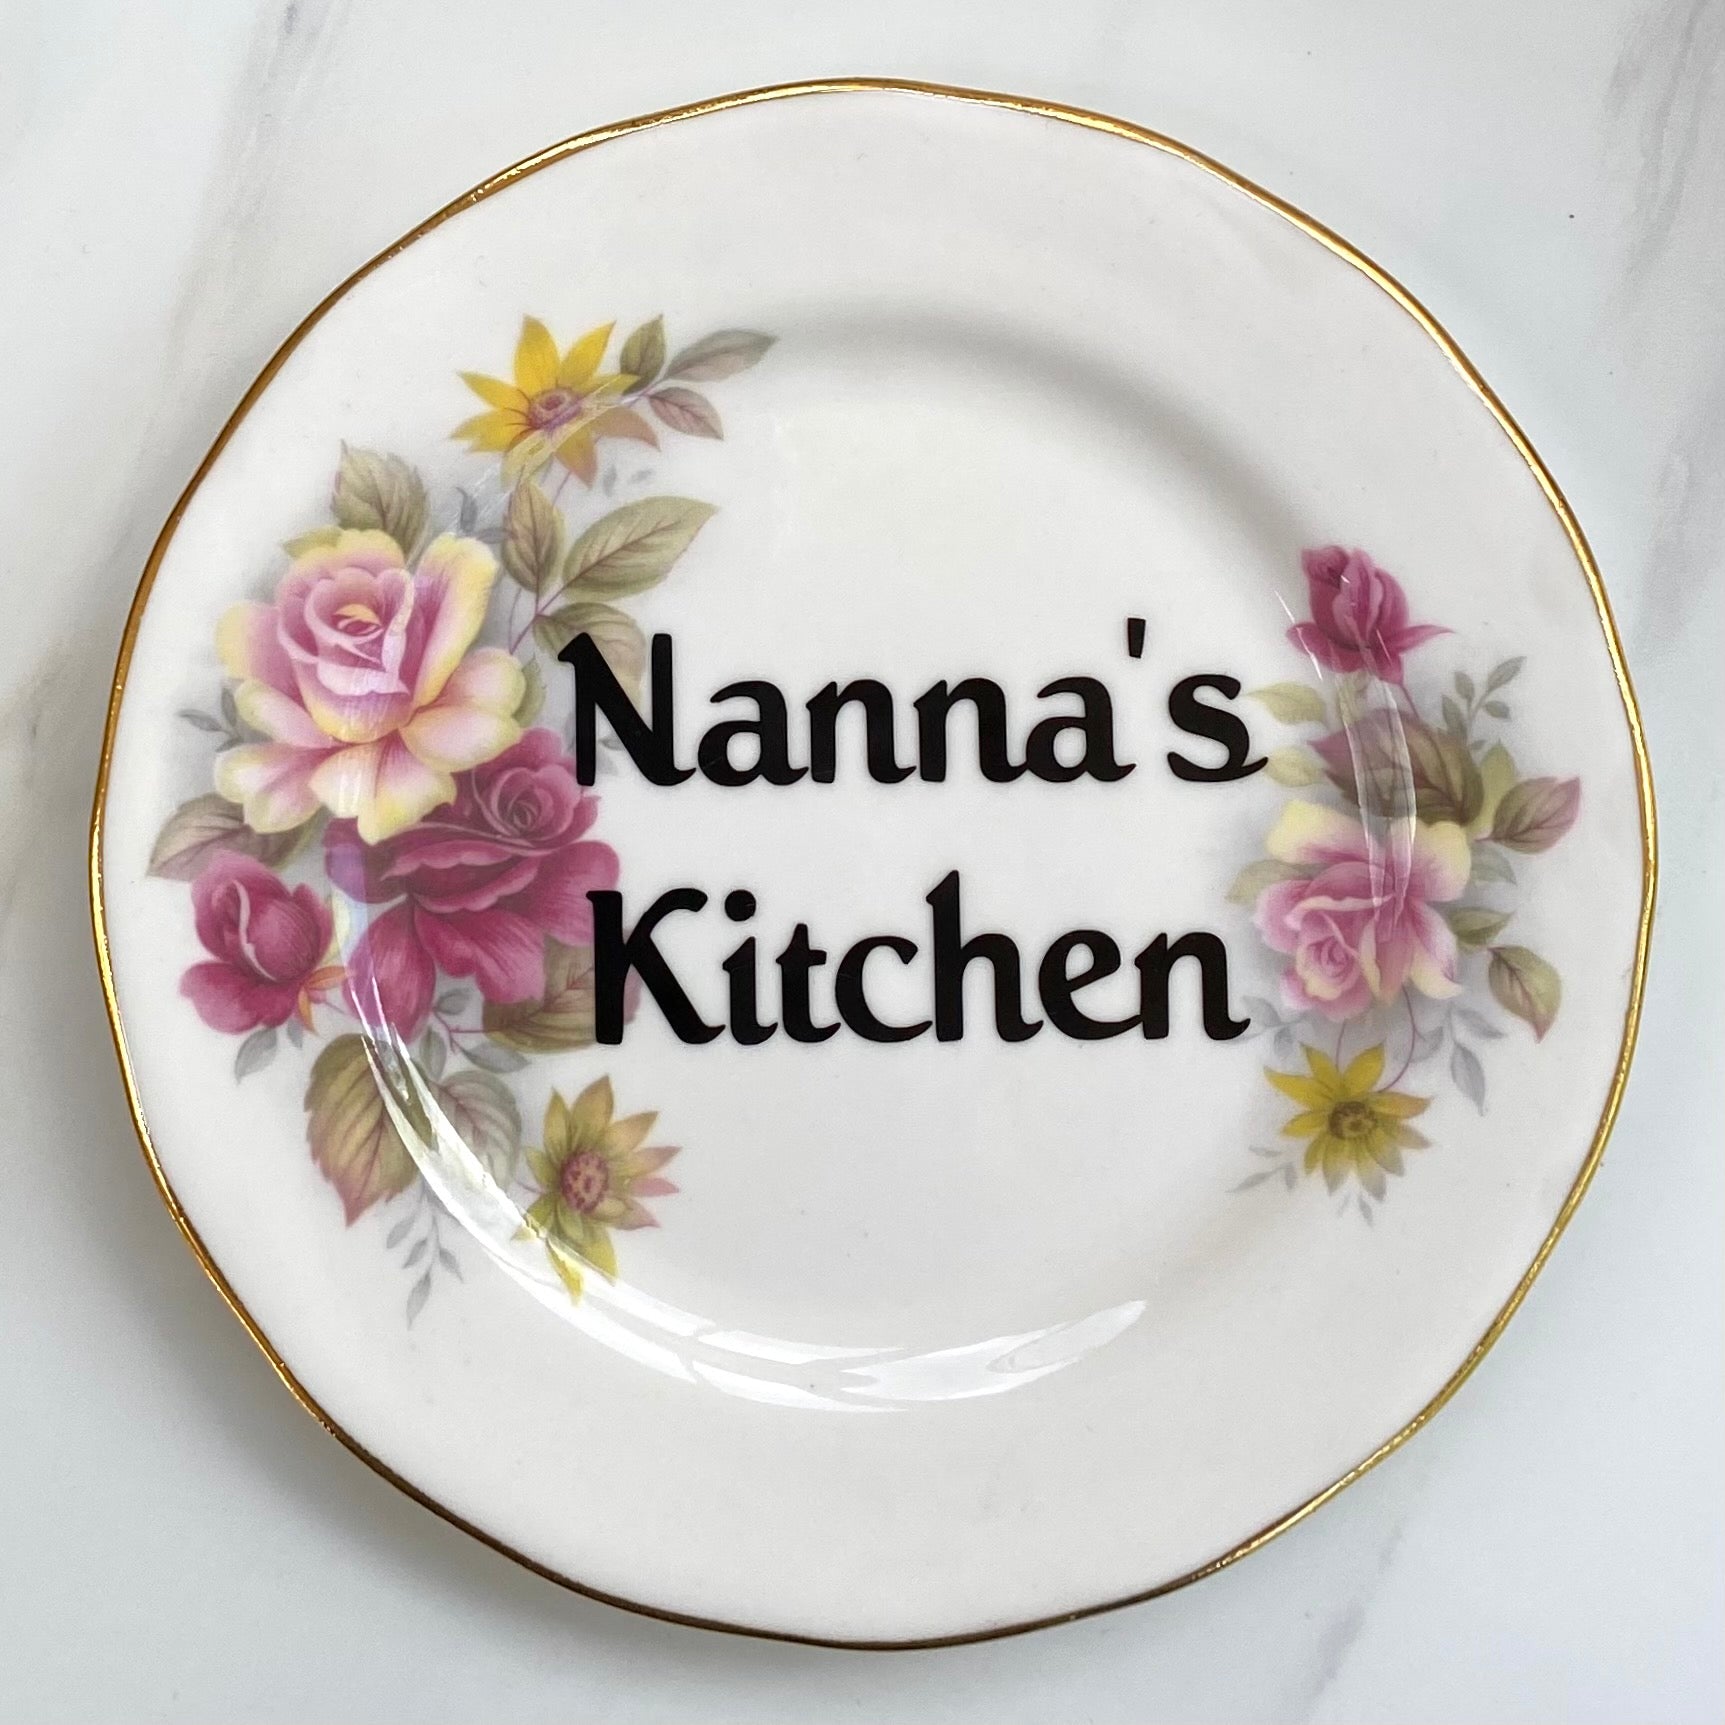 ‘Nanna’s kitchen